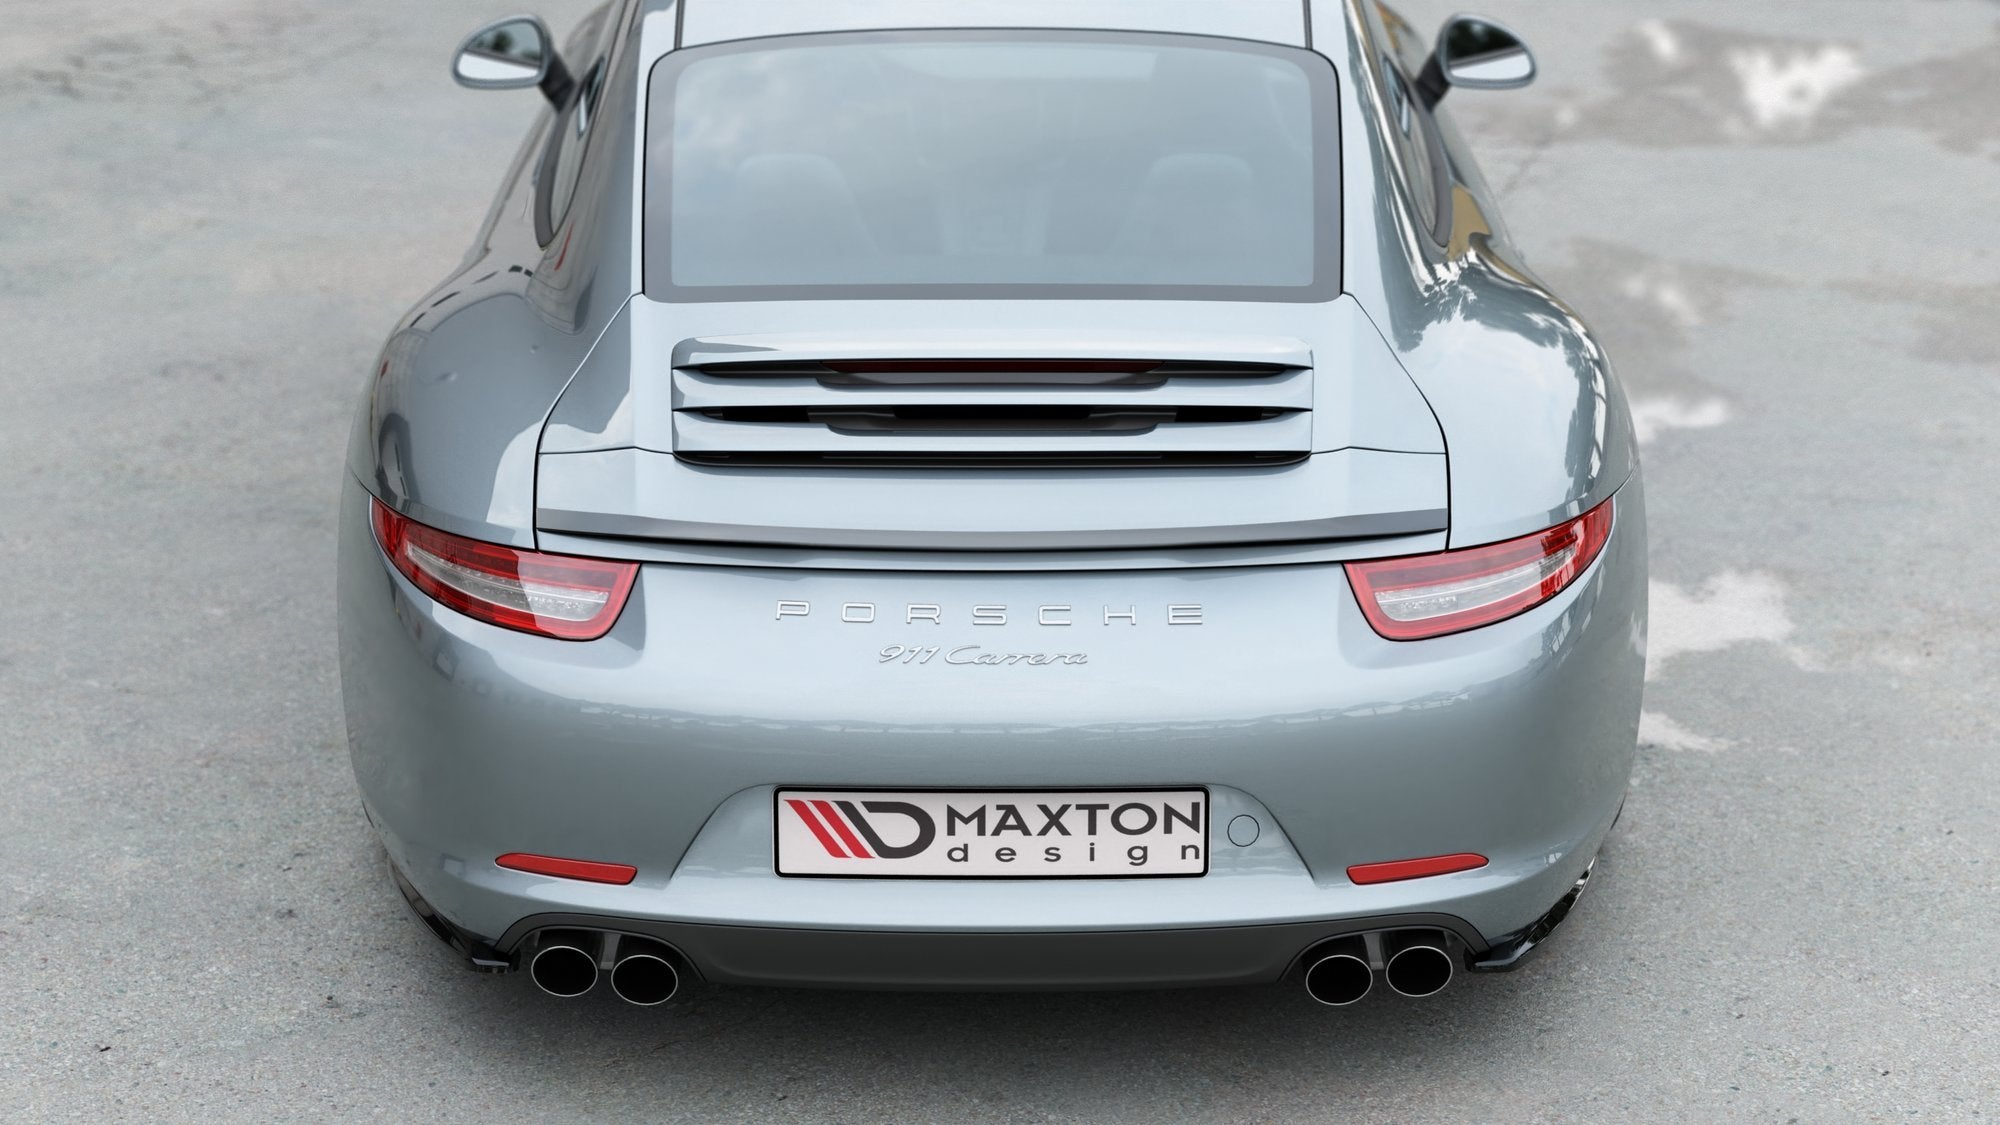 Zubehör für Porsche Sportwagen - Friedrich tunt Porsche - Jetzt